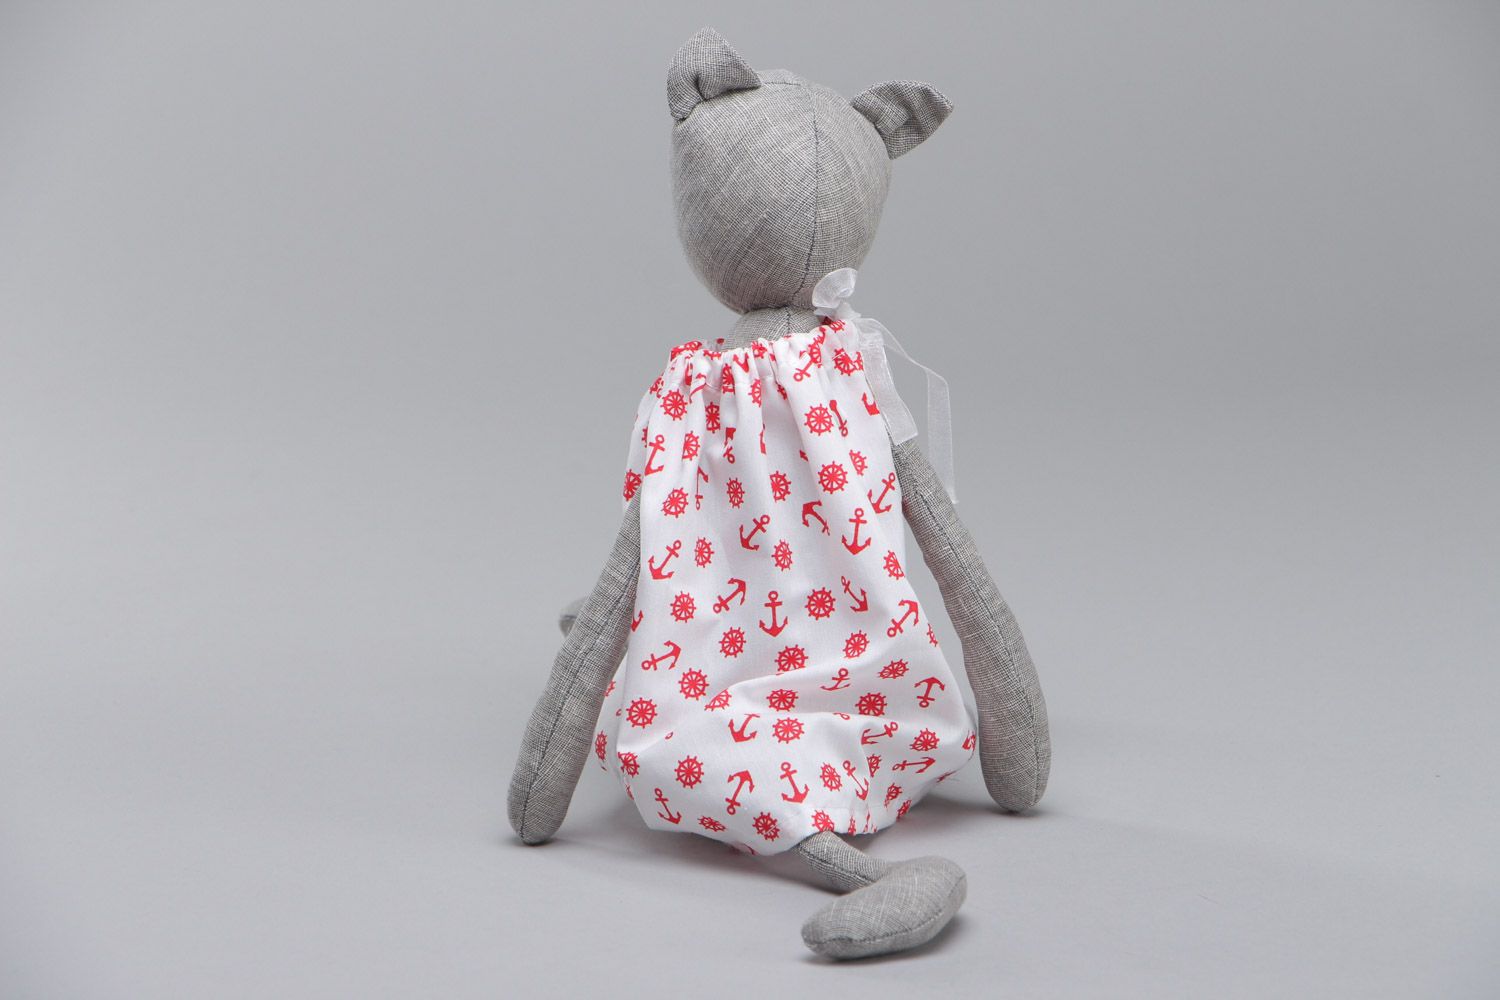 Мягкая текстильная игрушка кошечка в платье пошитая вручную из льна и хлопка фото 4